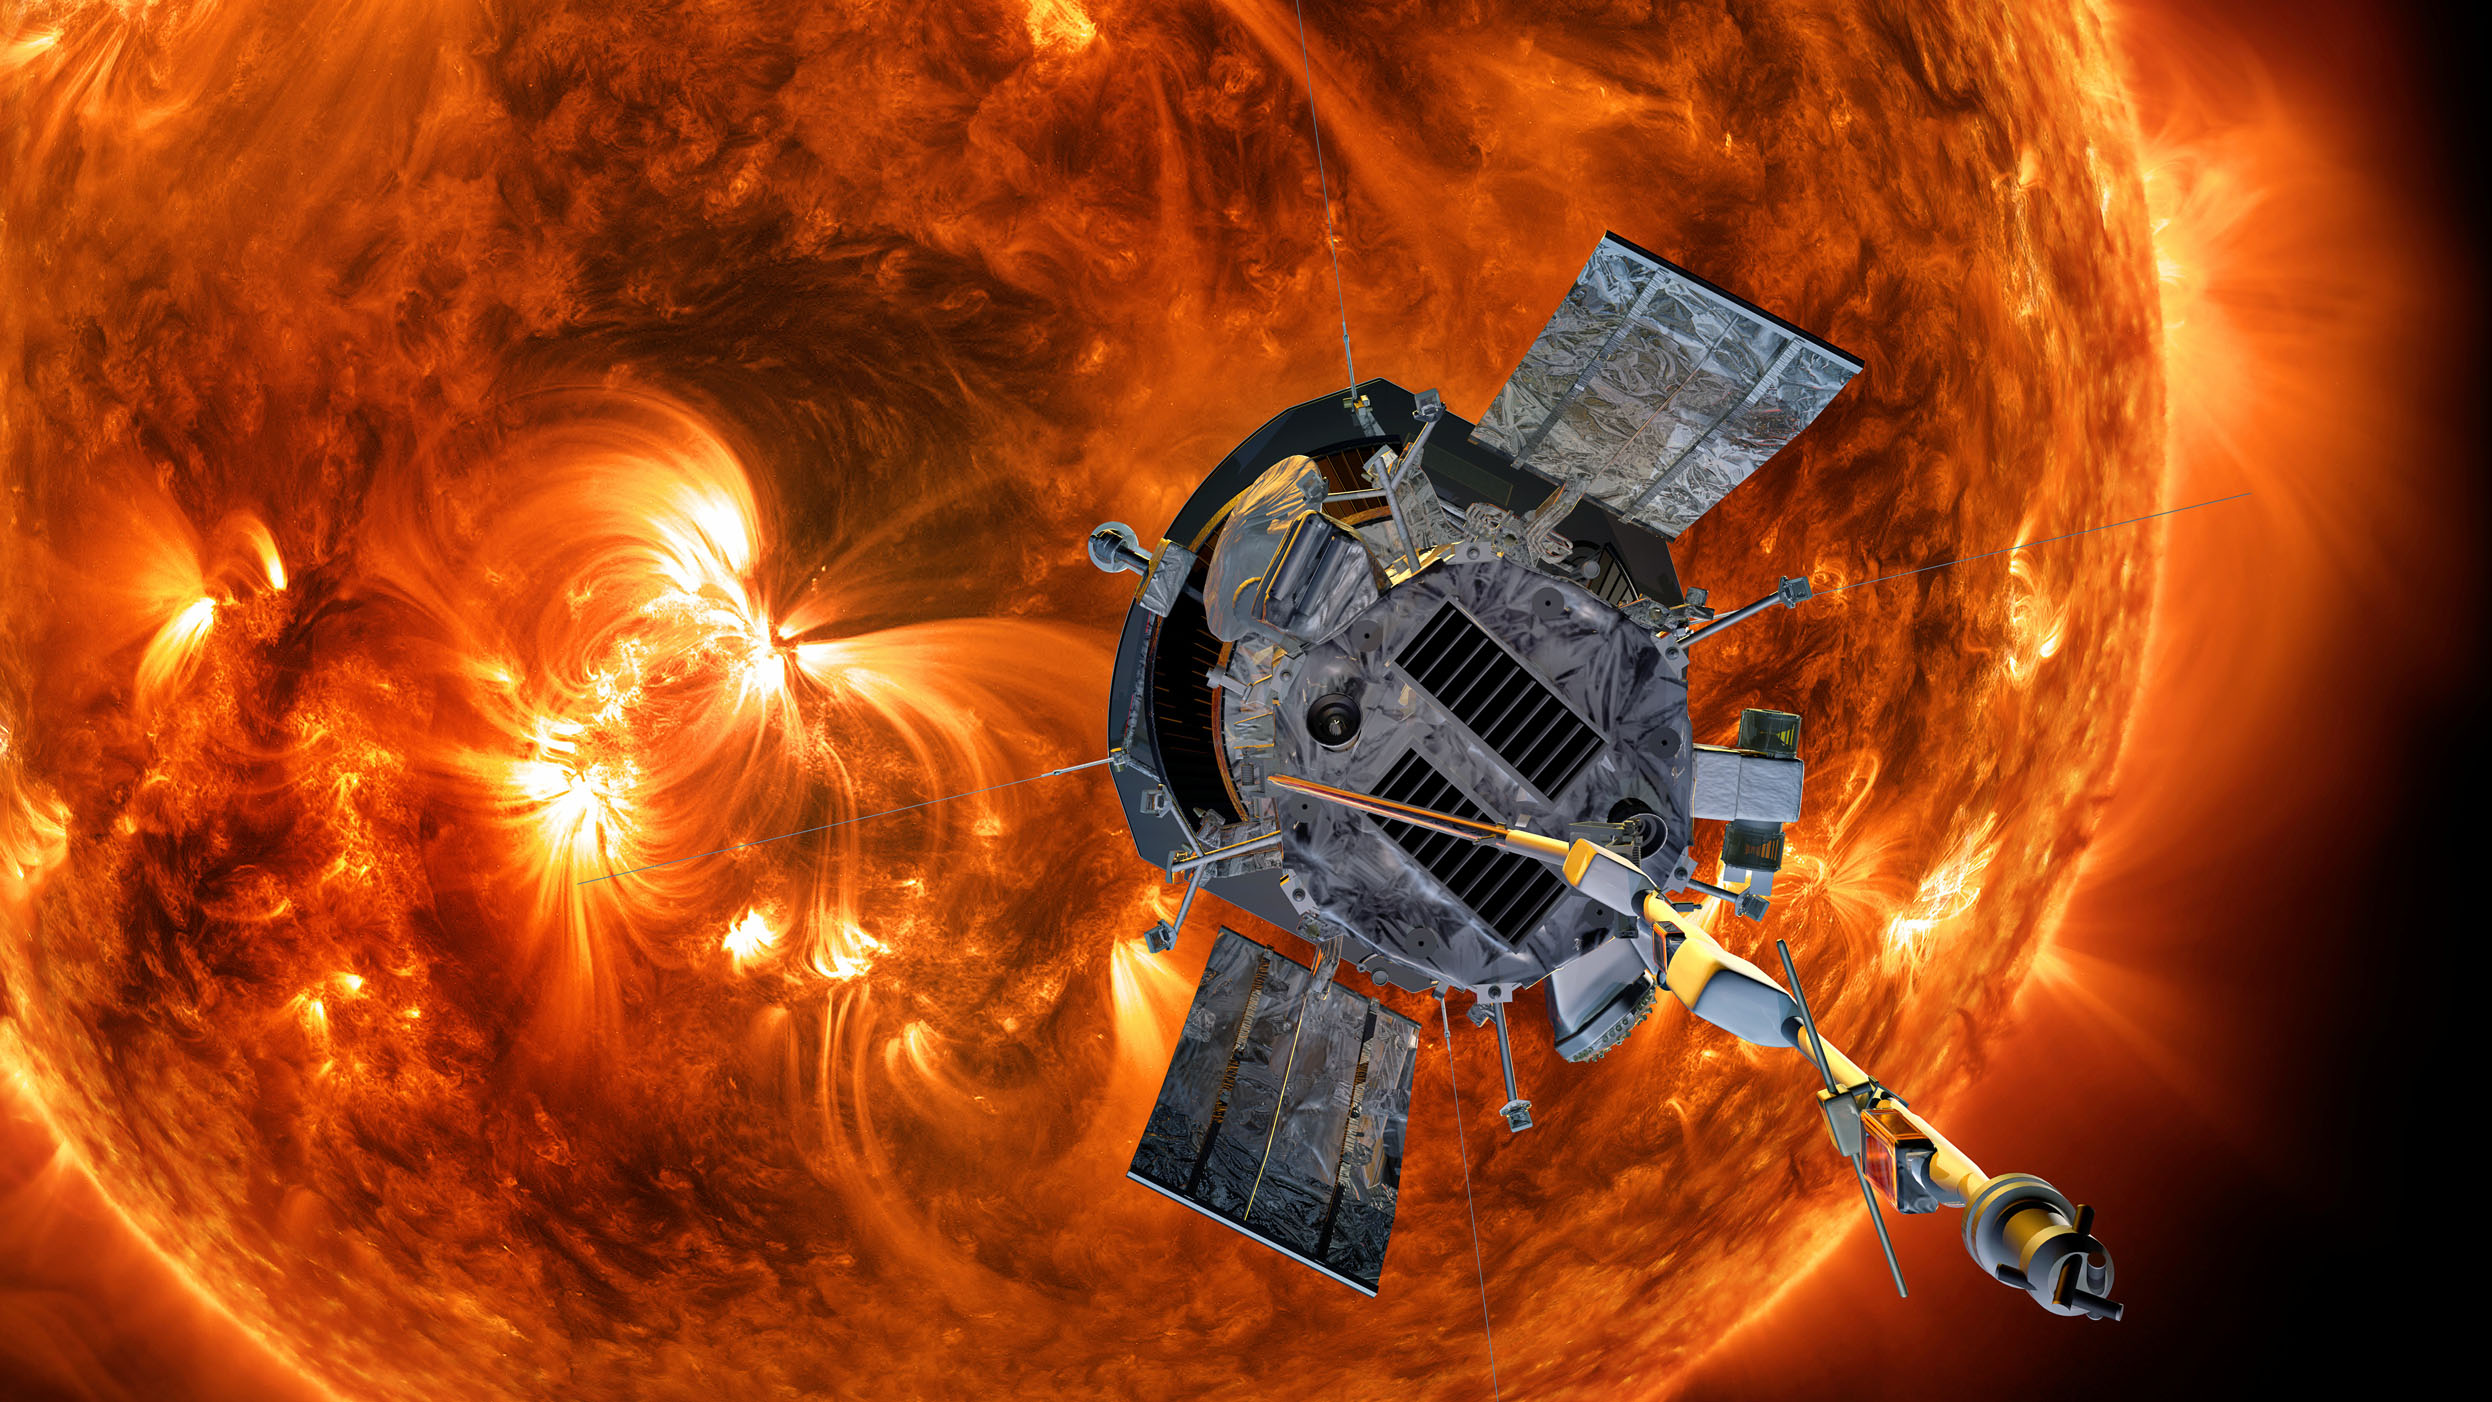 太阳温度高达几千摄氏度,为什么帕克太阳探测器还可以安然无恙?